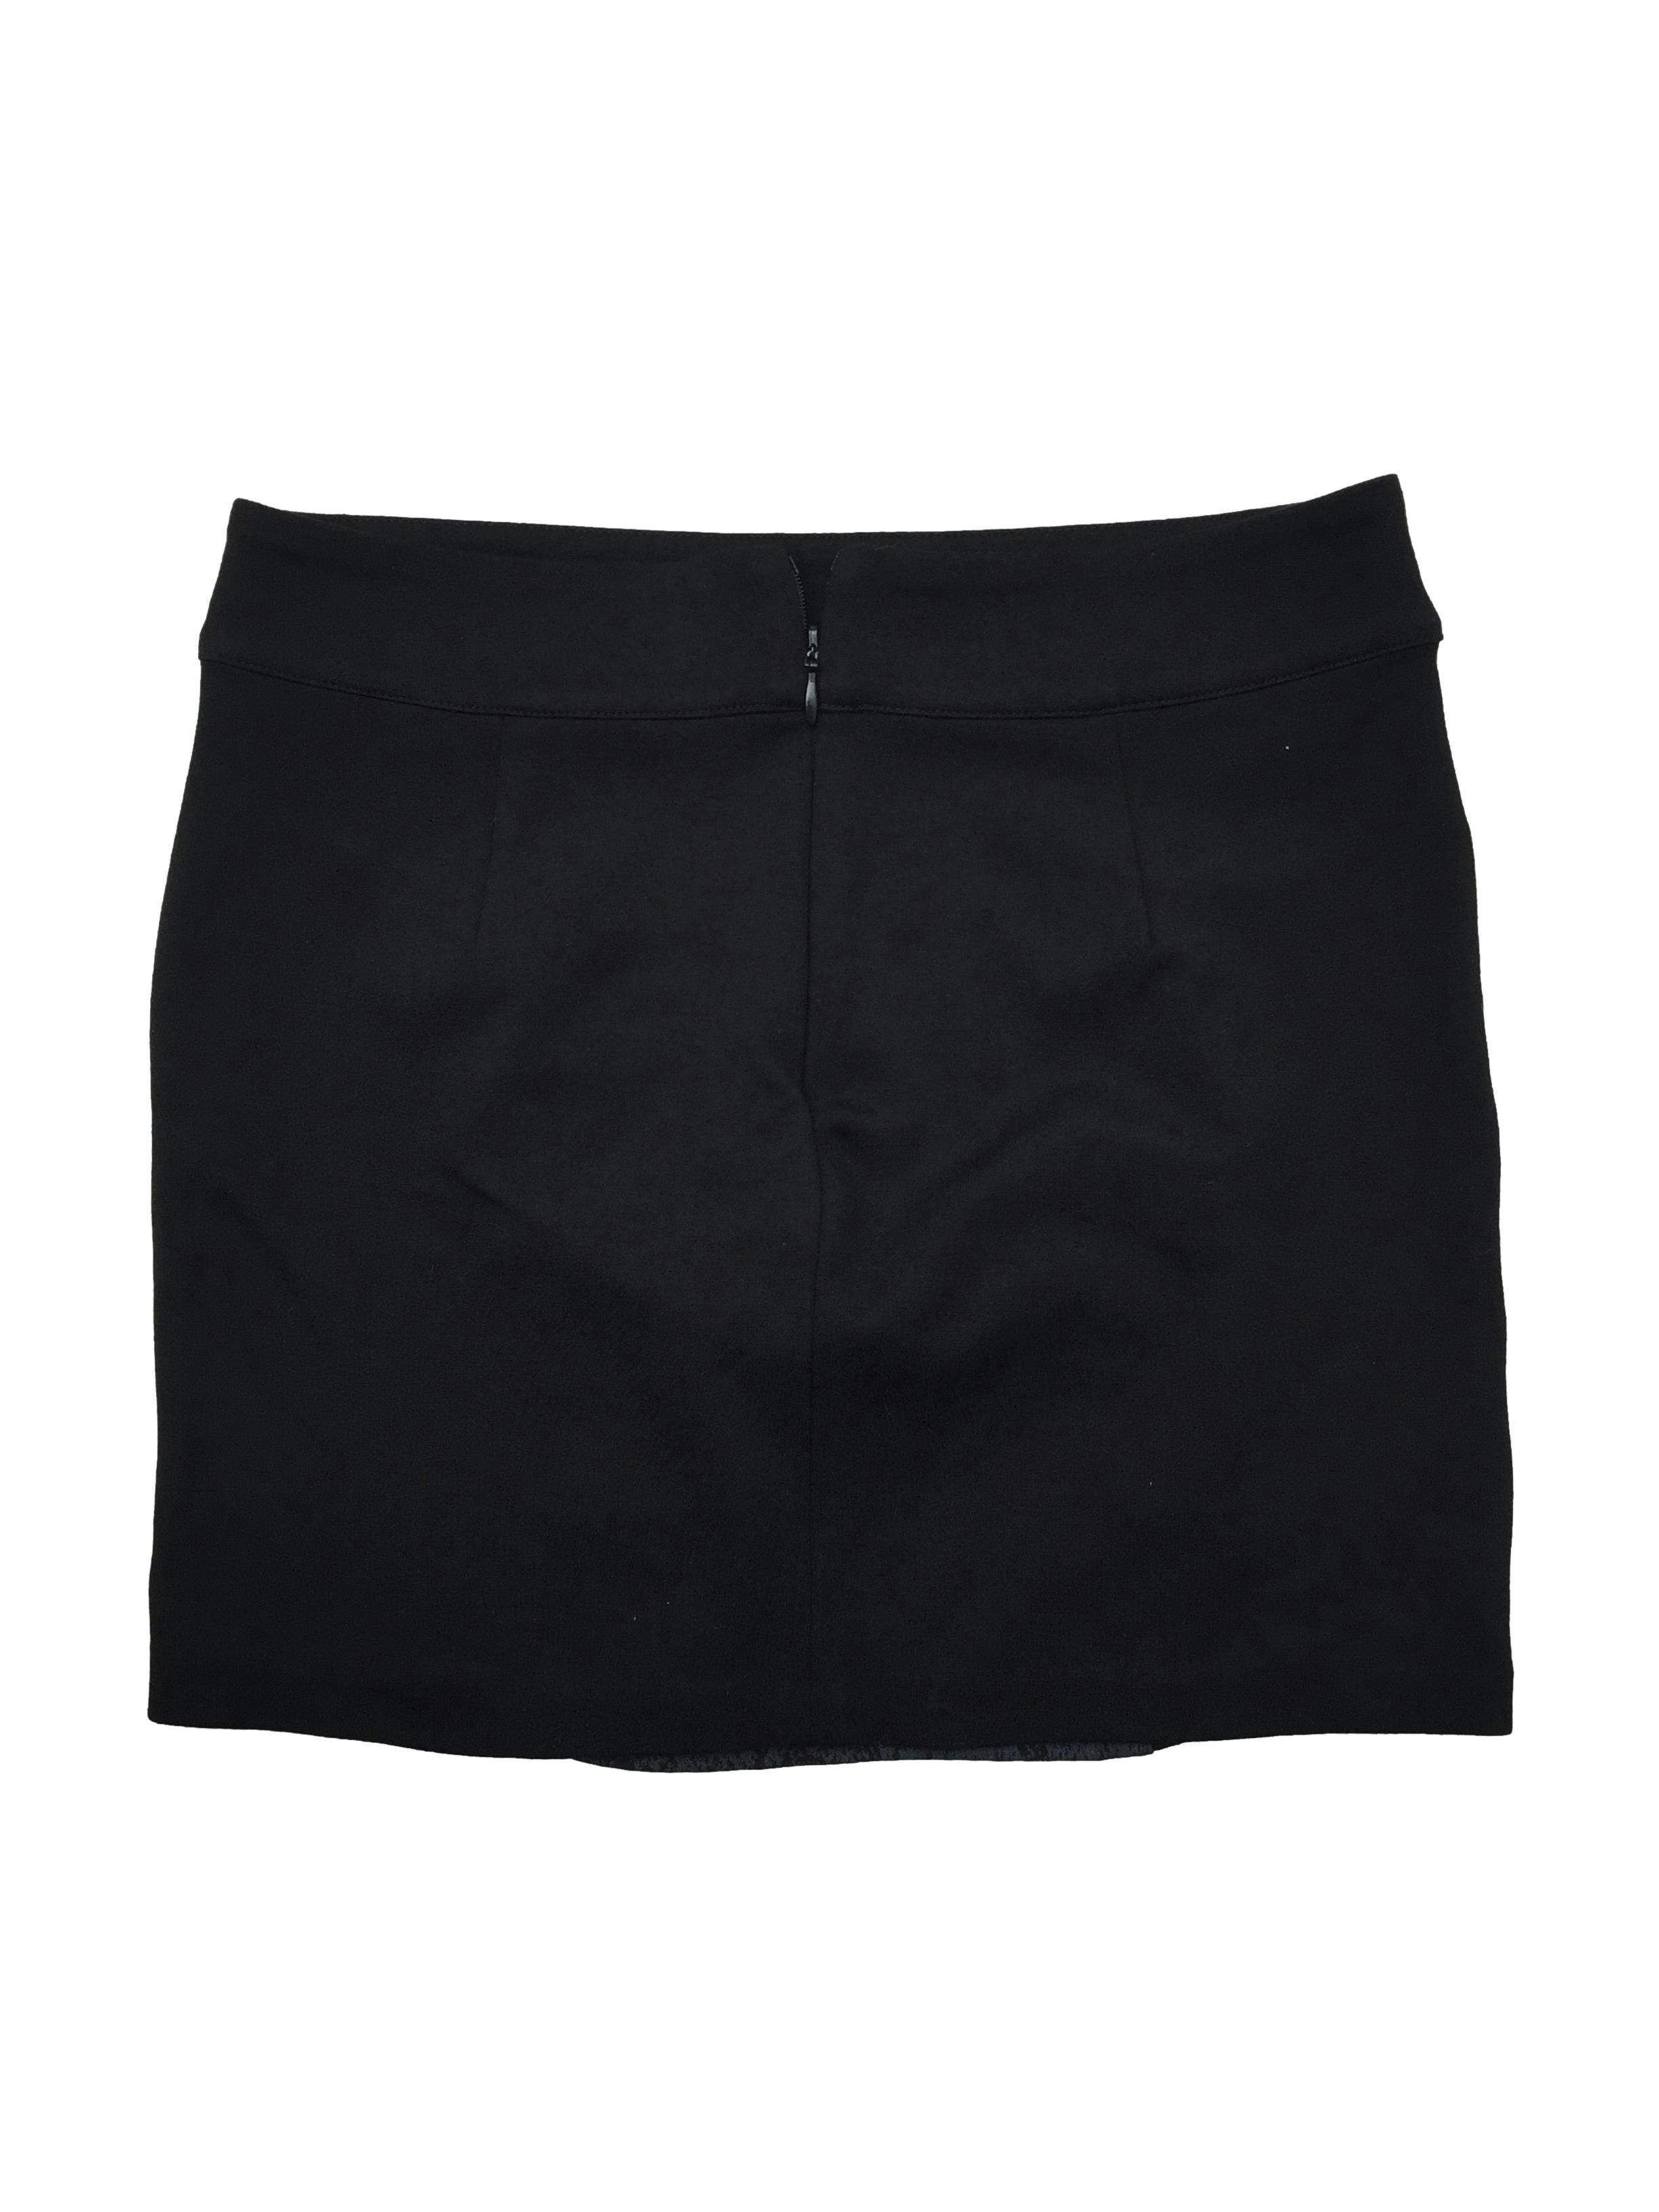 Falda negra de tela stretch con estampado de pitón y cierre posterior invisible. Cintura 68cm, Largo 34cm.